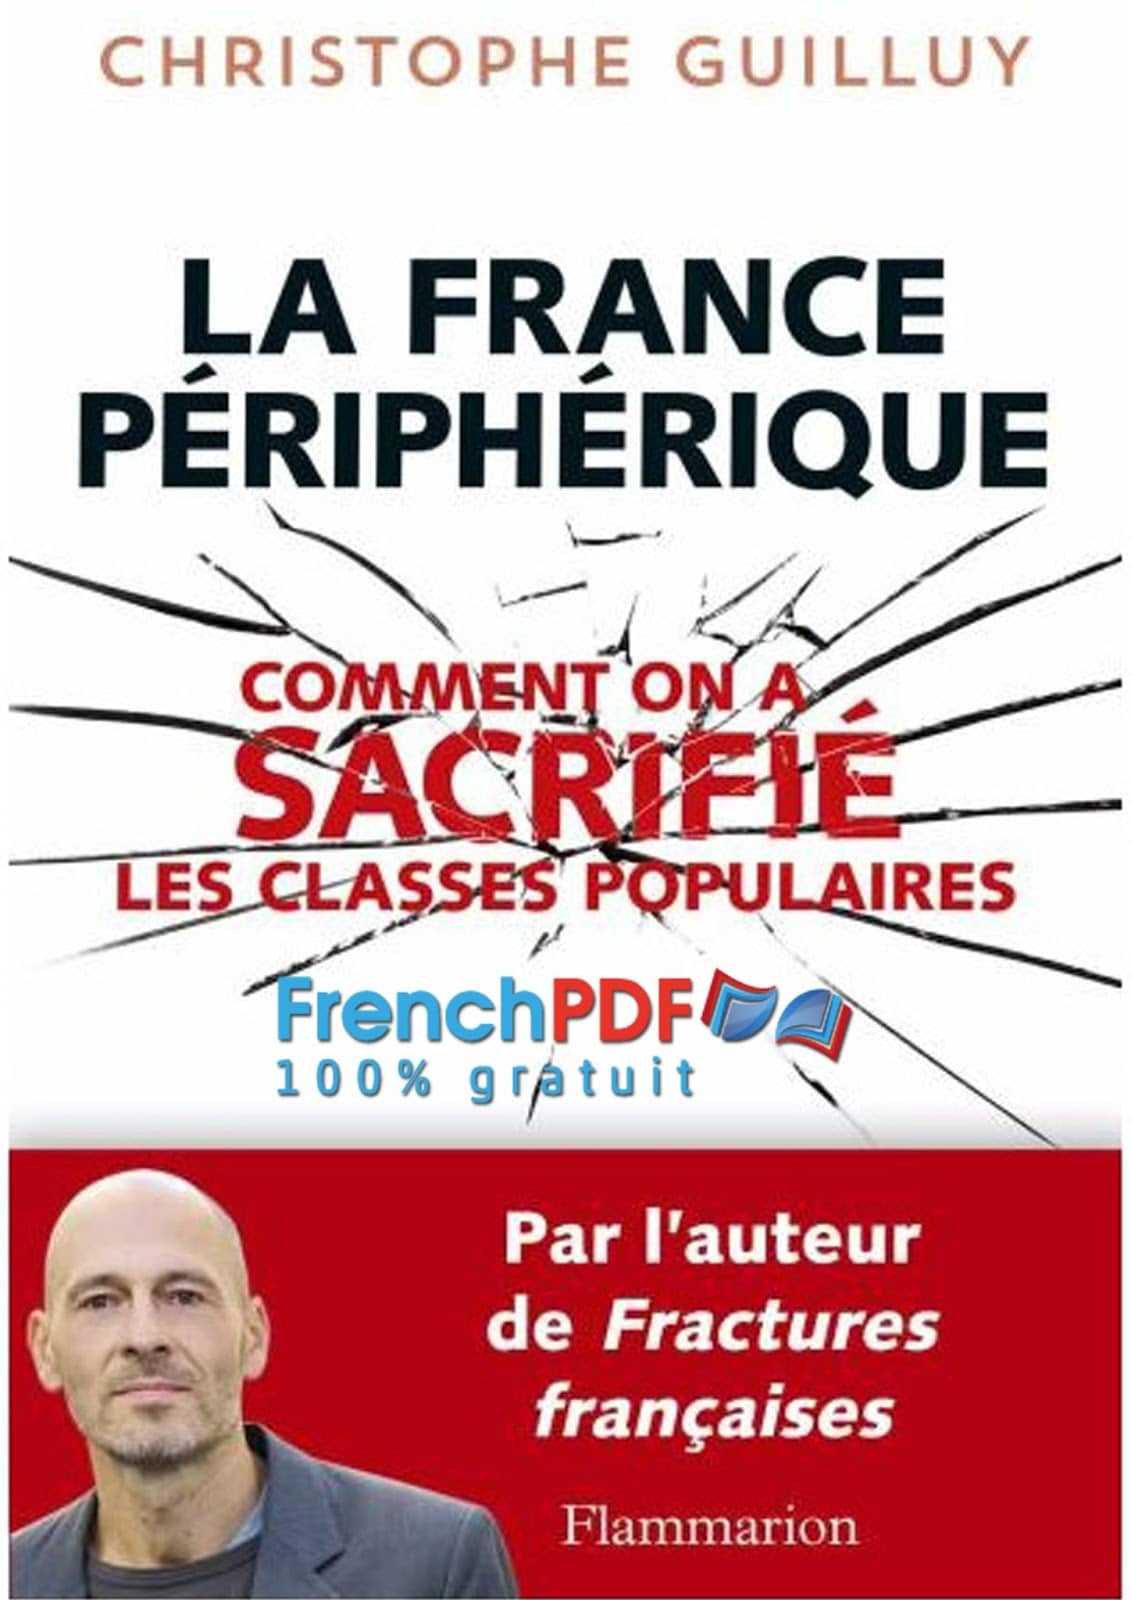 La France Peripherique PDF de Christophe Guilluy